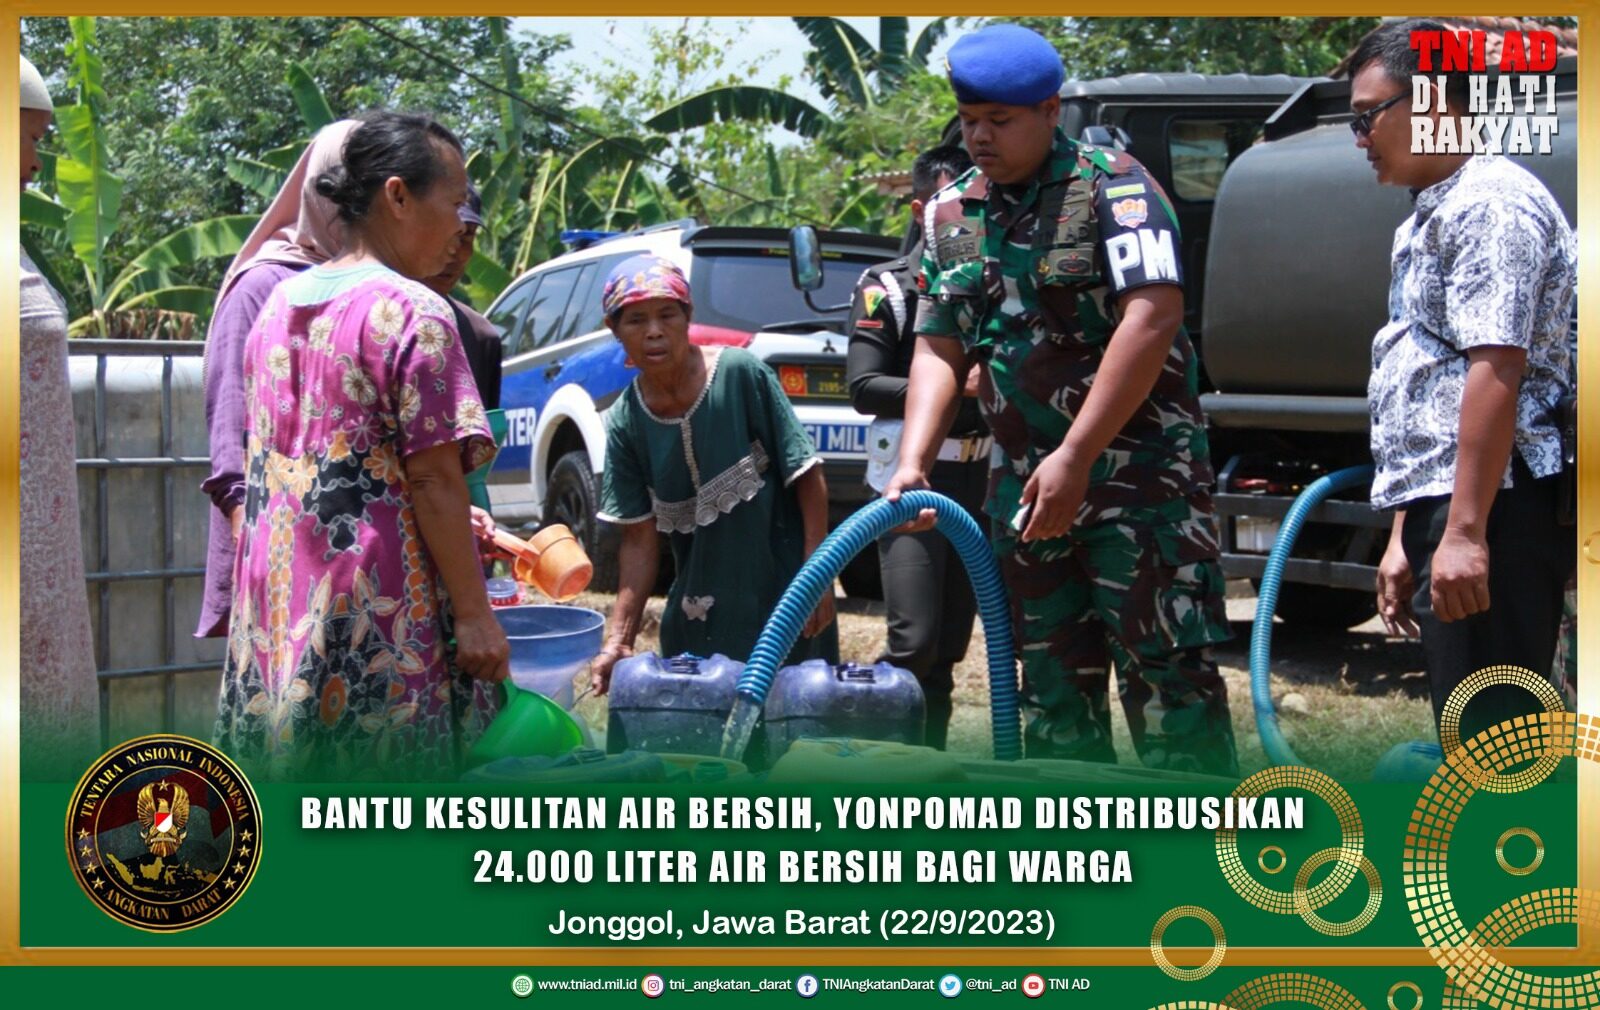 Bantu Kesulitan Air Bersih, Prajurit Yonpomad Bagikan 24.000 Liter Air Bersih Bagi Masyarakat